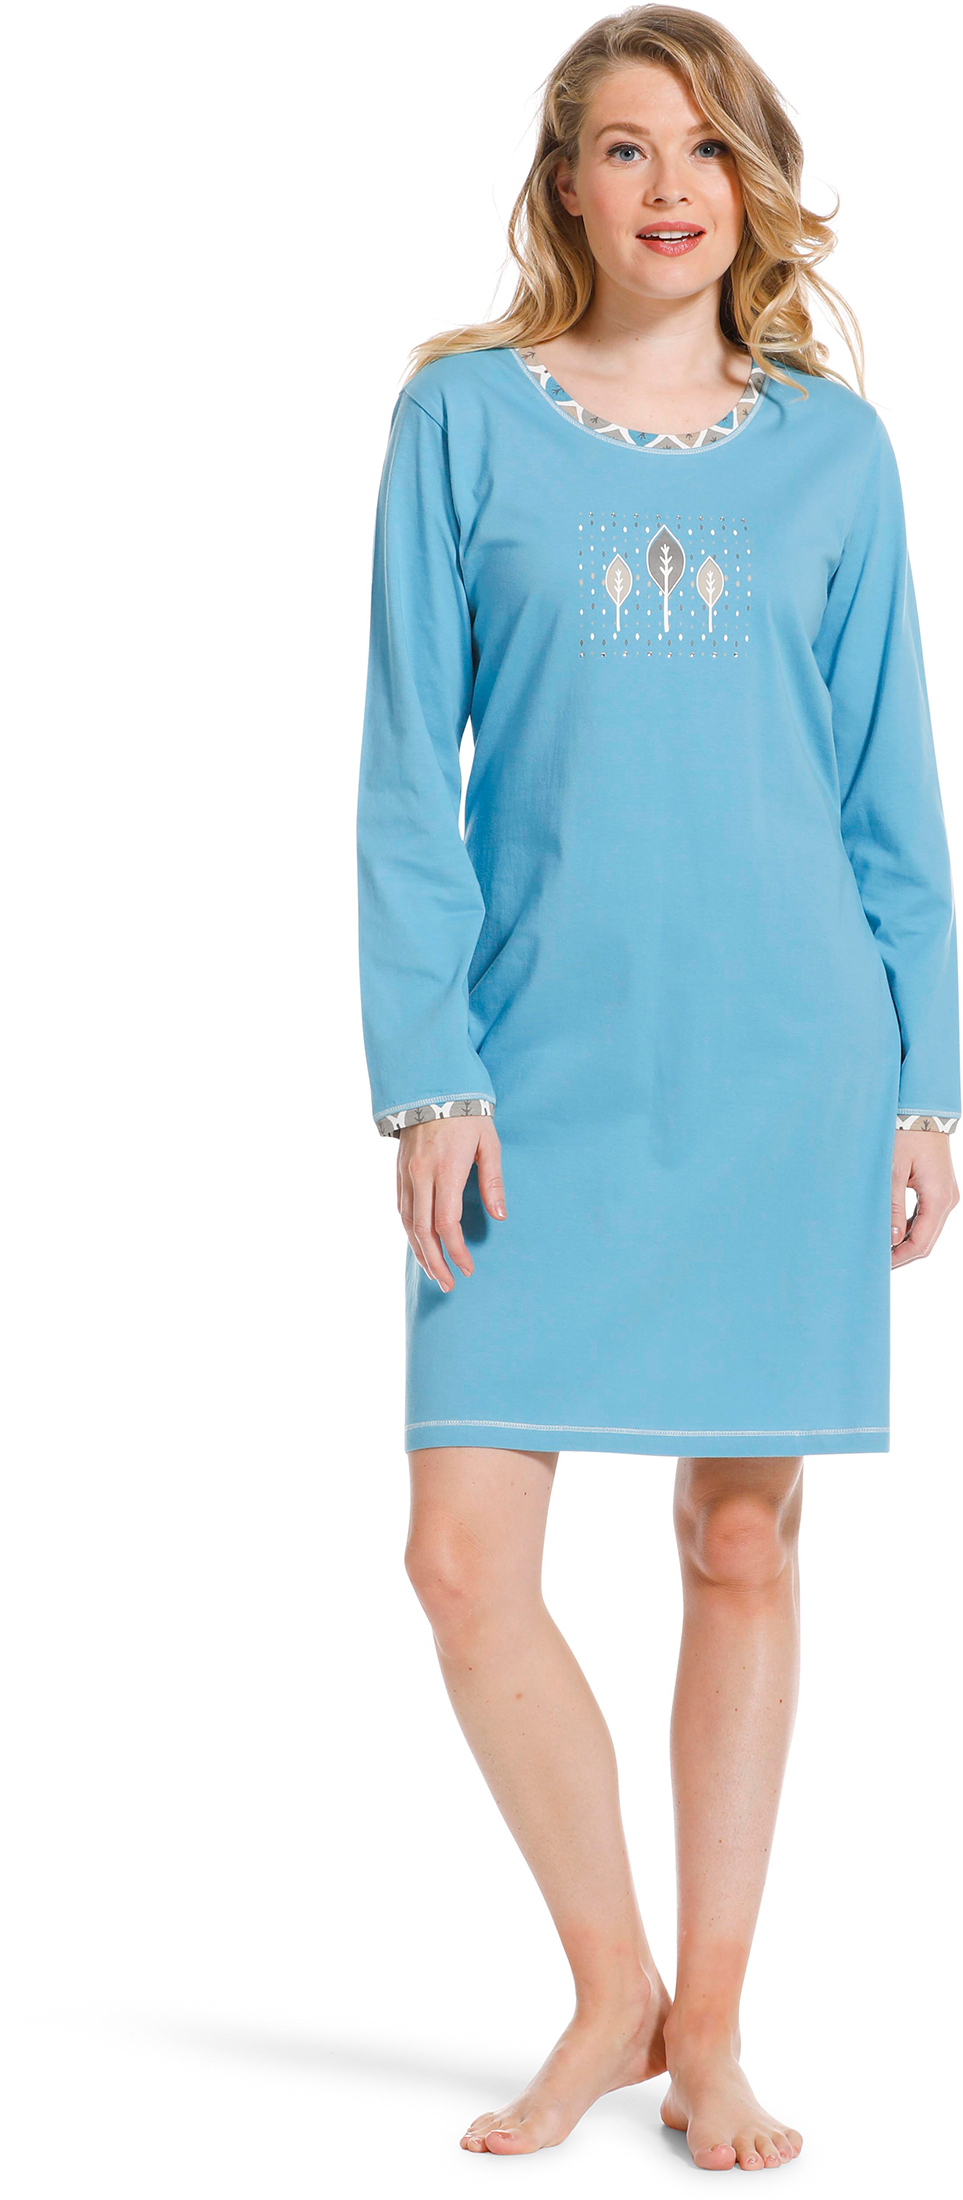 Pastunette dames nachthemd 10222-138-2 - Blauw - 44